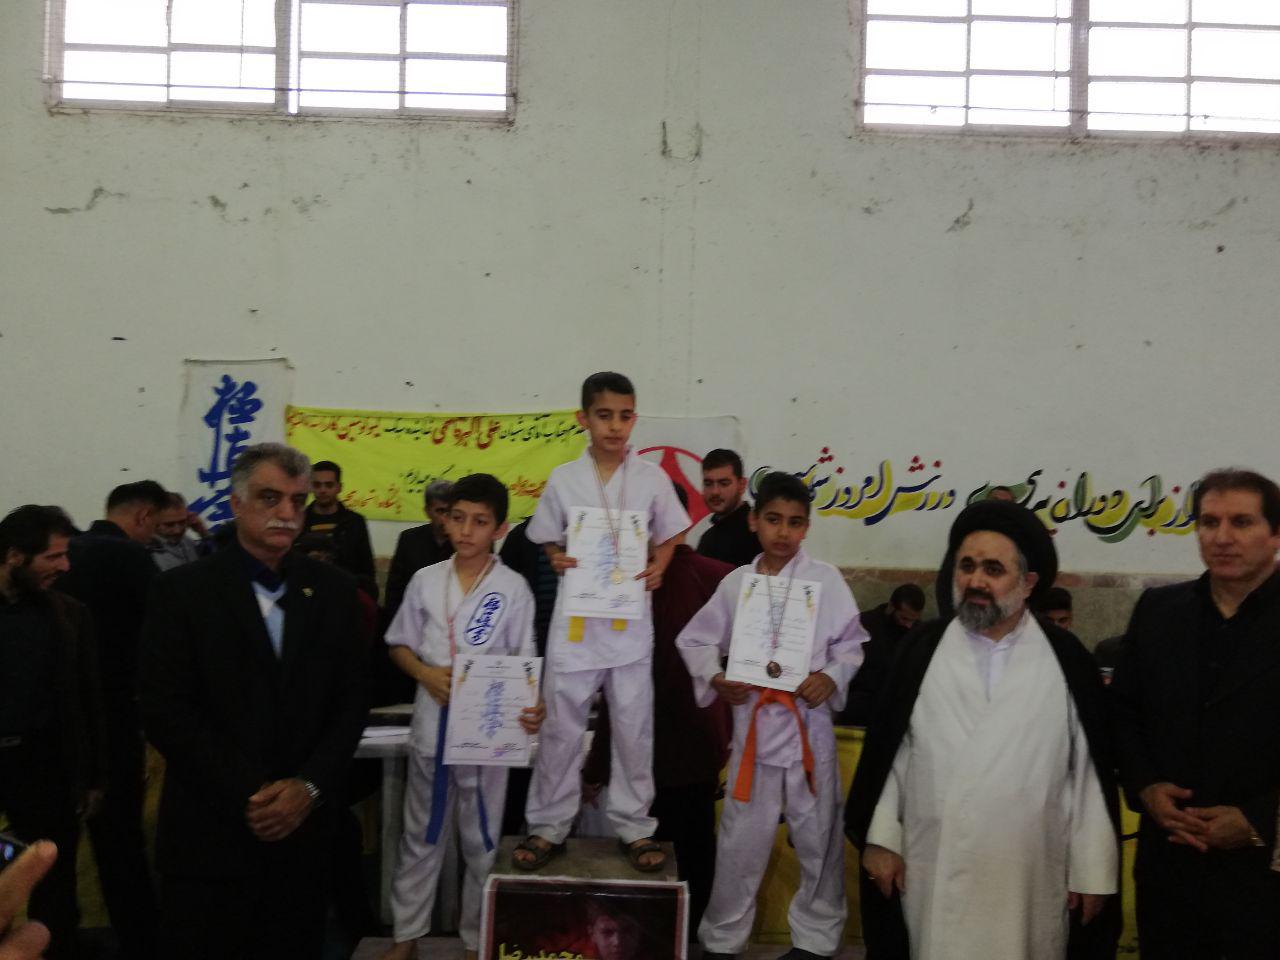 گزارش تصویری:مسابقات استانی کاراته به میزبانی شهر هچیرود و با حضور امام جمعه هچیرود برگزار شد.